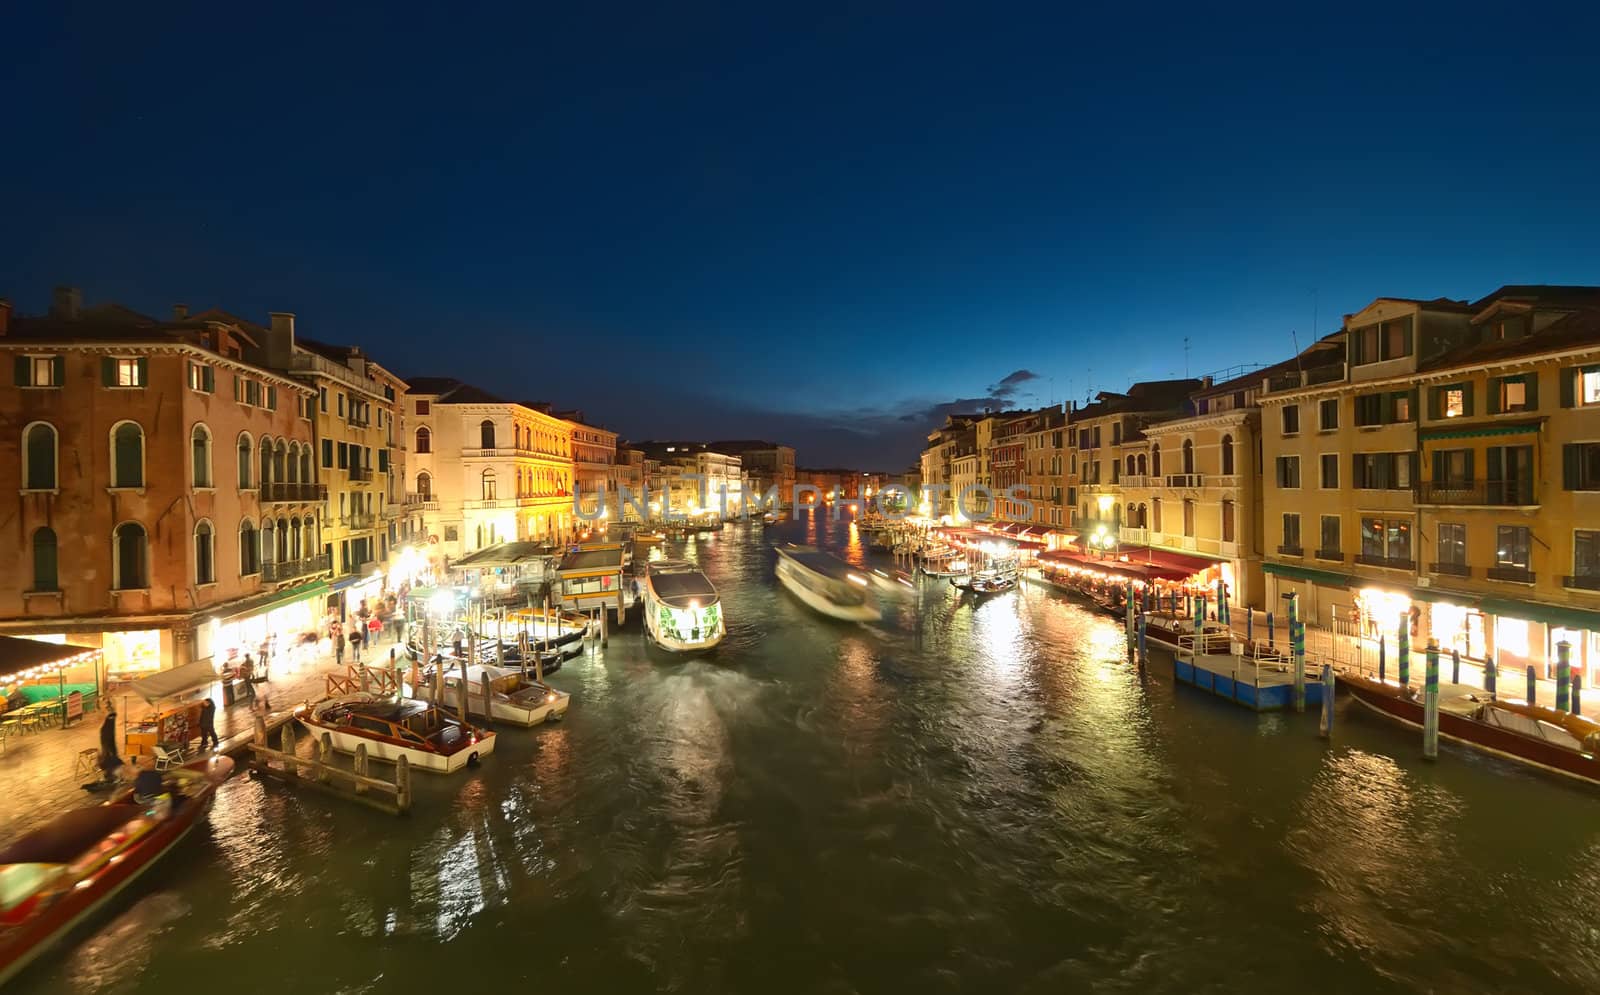 Venice at night by johny007pan